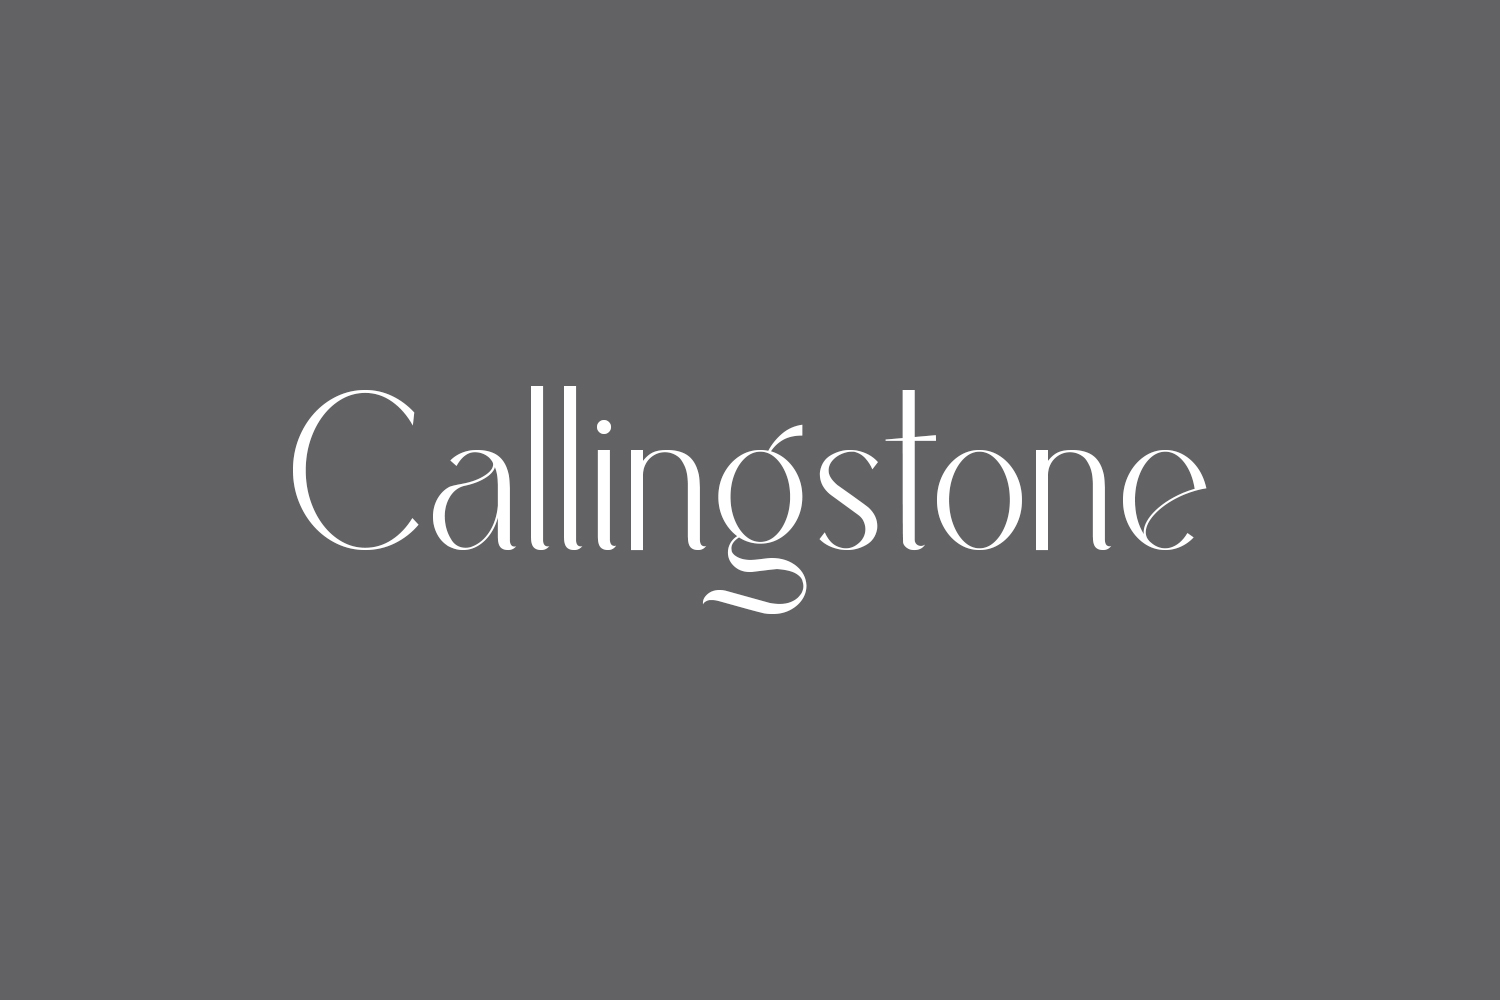 Callingstone Free Font